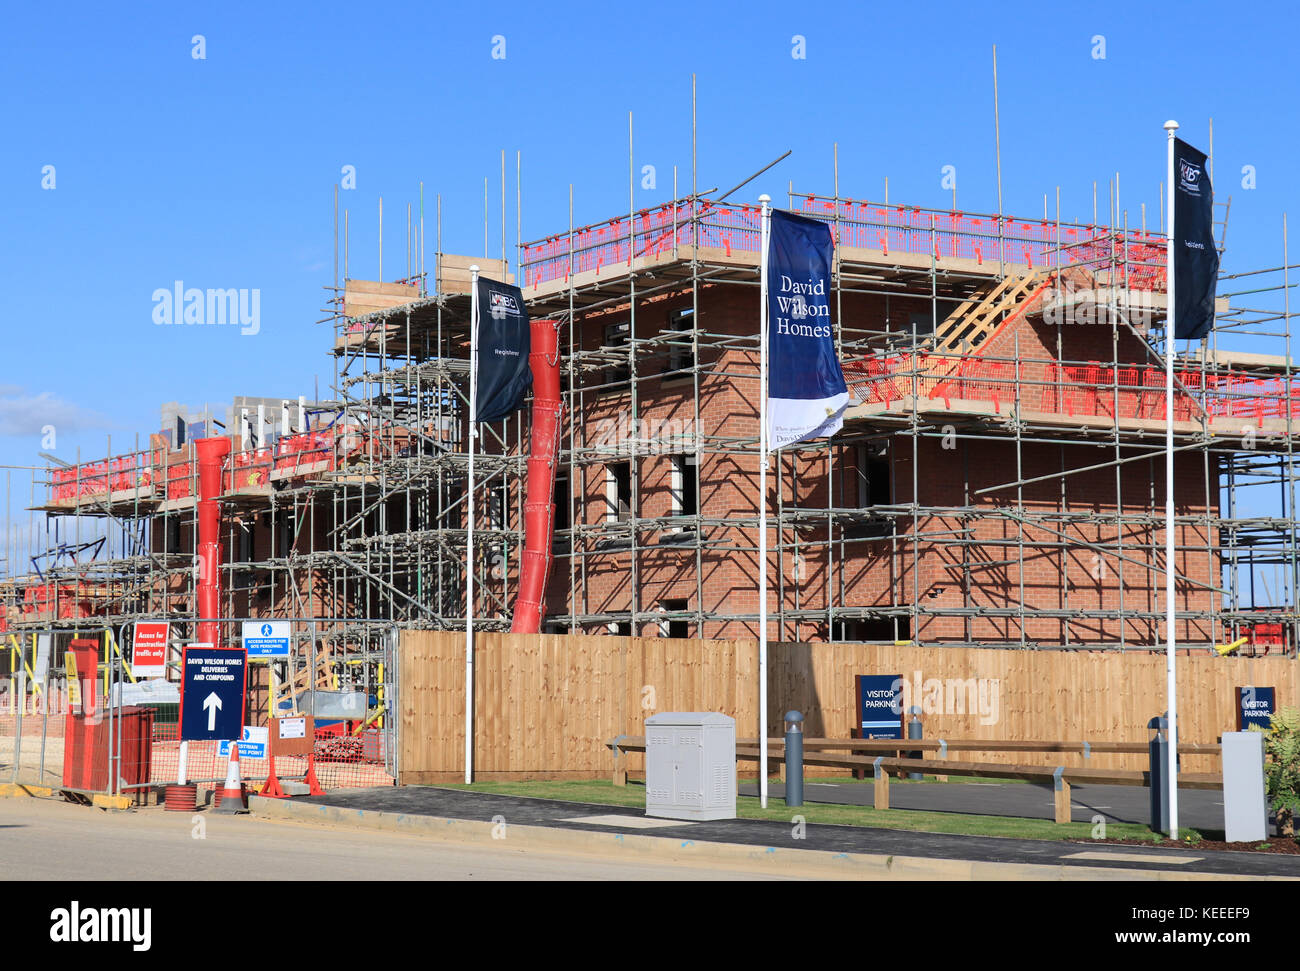 Développement de nouveaux logements, Grantham, Lincolnshire, Angleterre, RU Banque D'Images